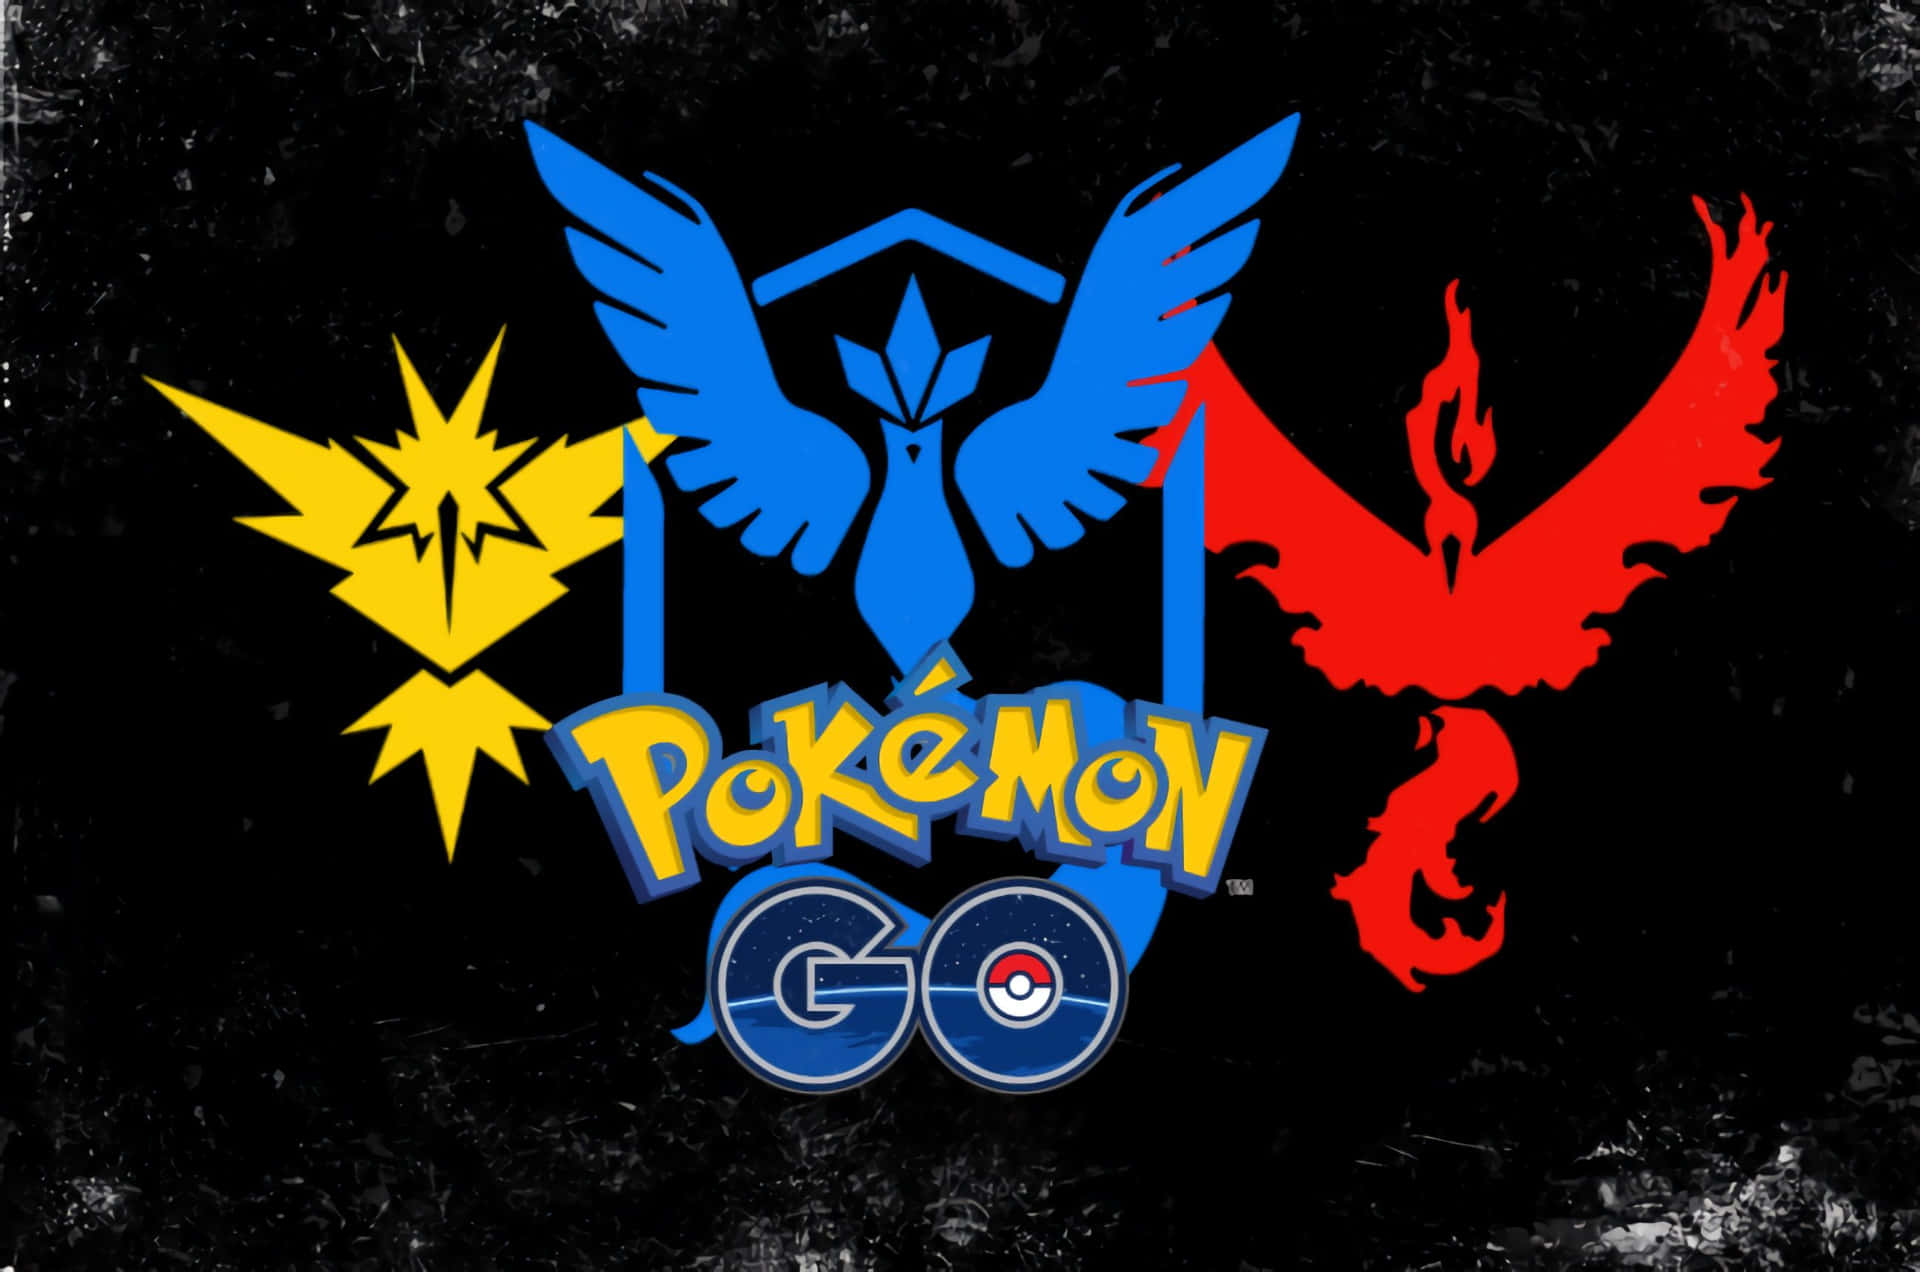 Losentrenadores Se Reúnen Para Celebrar El Lanzamiento De Pokémon Go. Fondo de pantalla